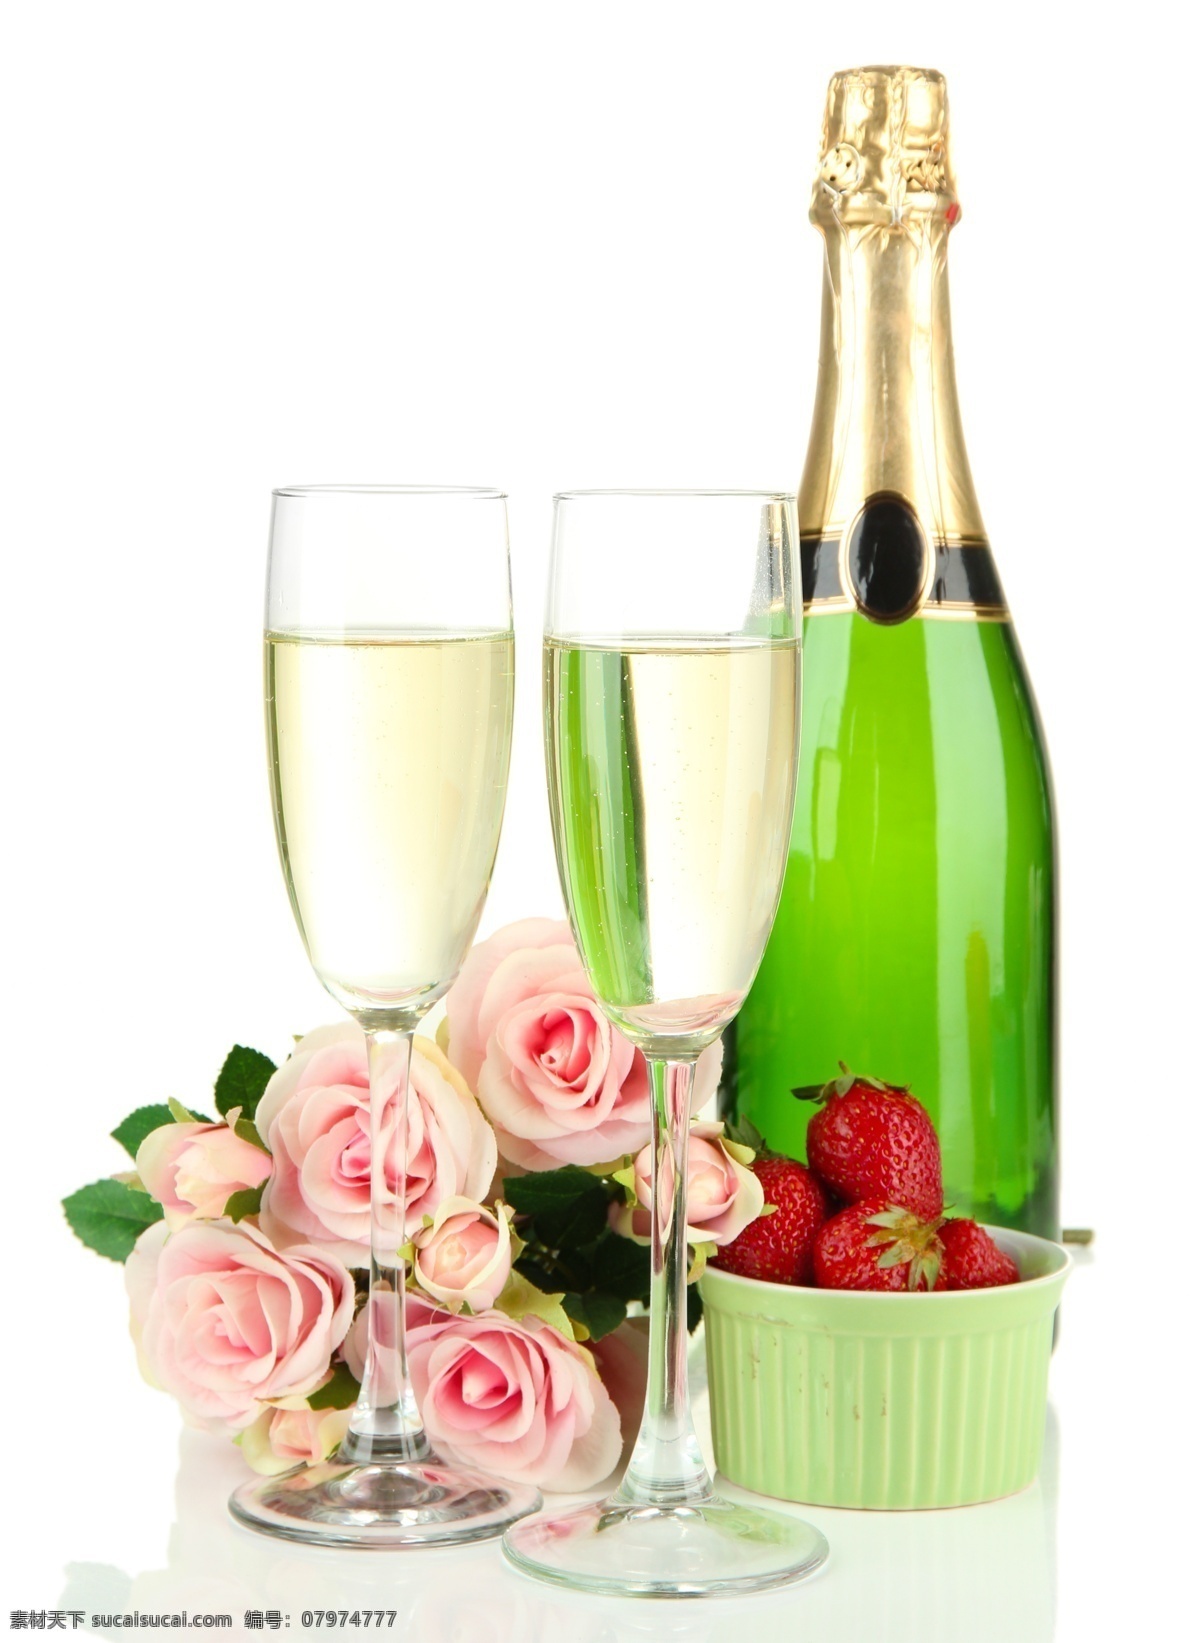 高脚杯 中 香槟酒 香槟 草莓 玫瑰花 餐桌 美食 食物 酒水饮料 餐饮美食 白色